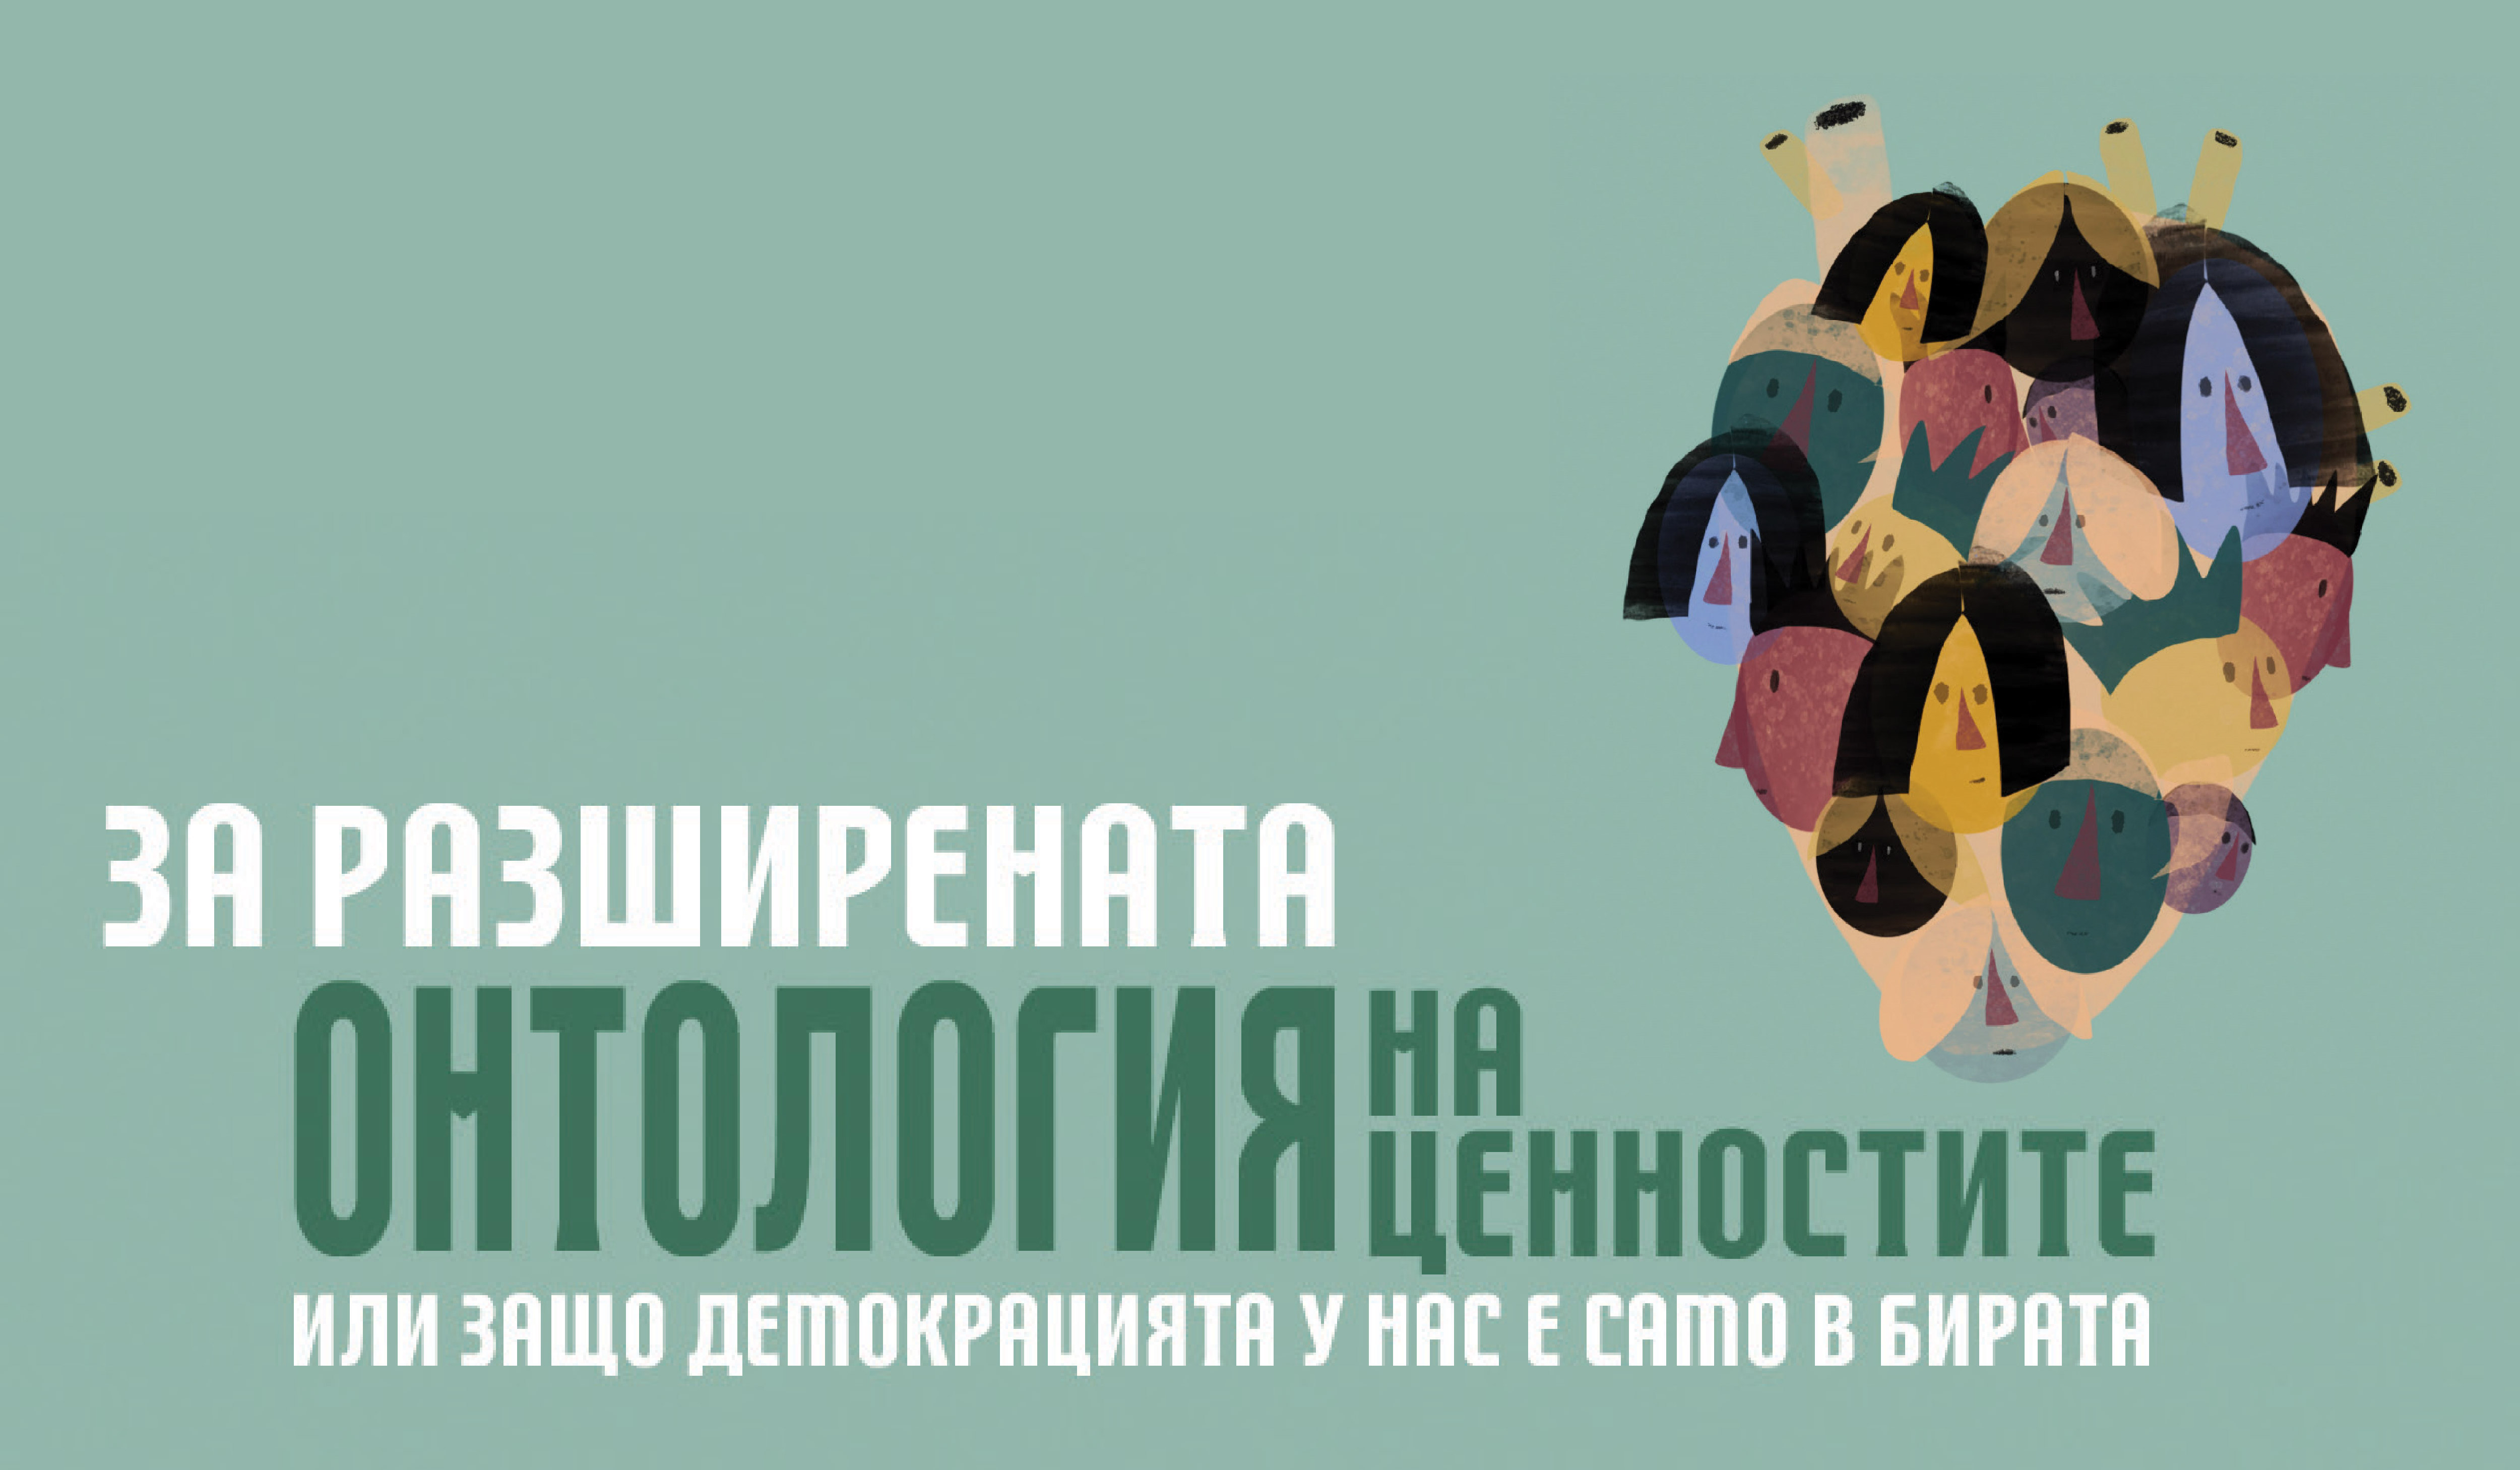 „За разширената онтология на ценностите, или защо демокрацията у нас е само в бирата” – доклад, изготвен от Силвия Борисова и Ве